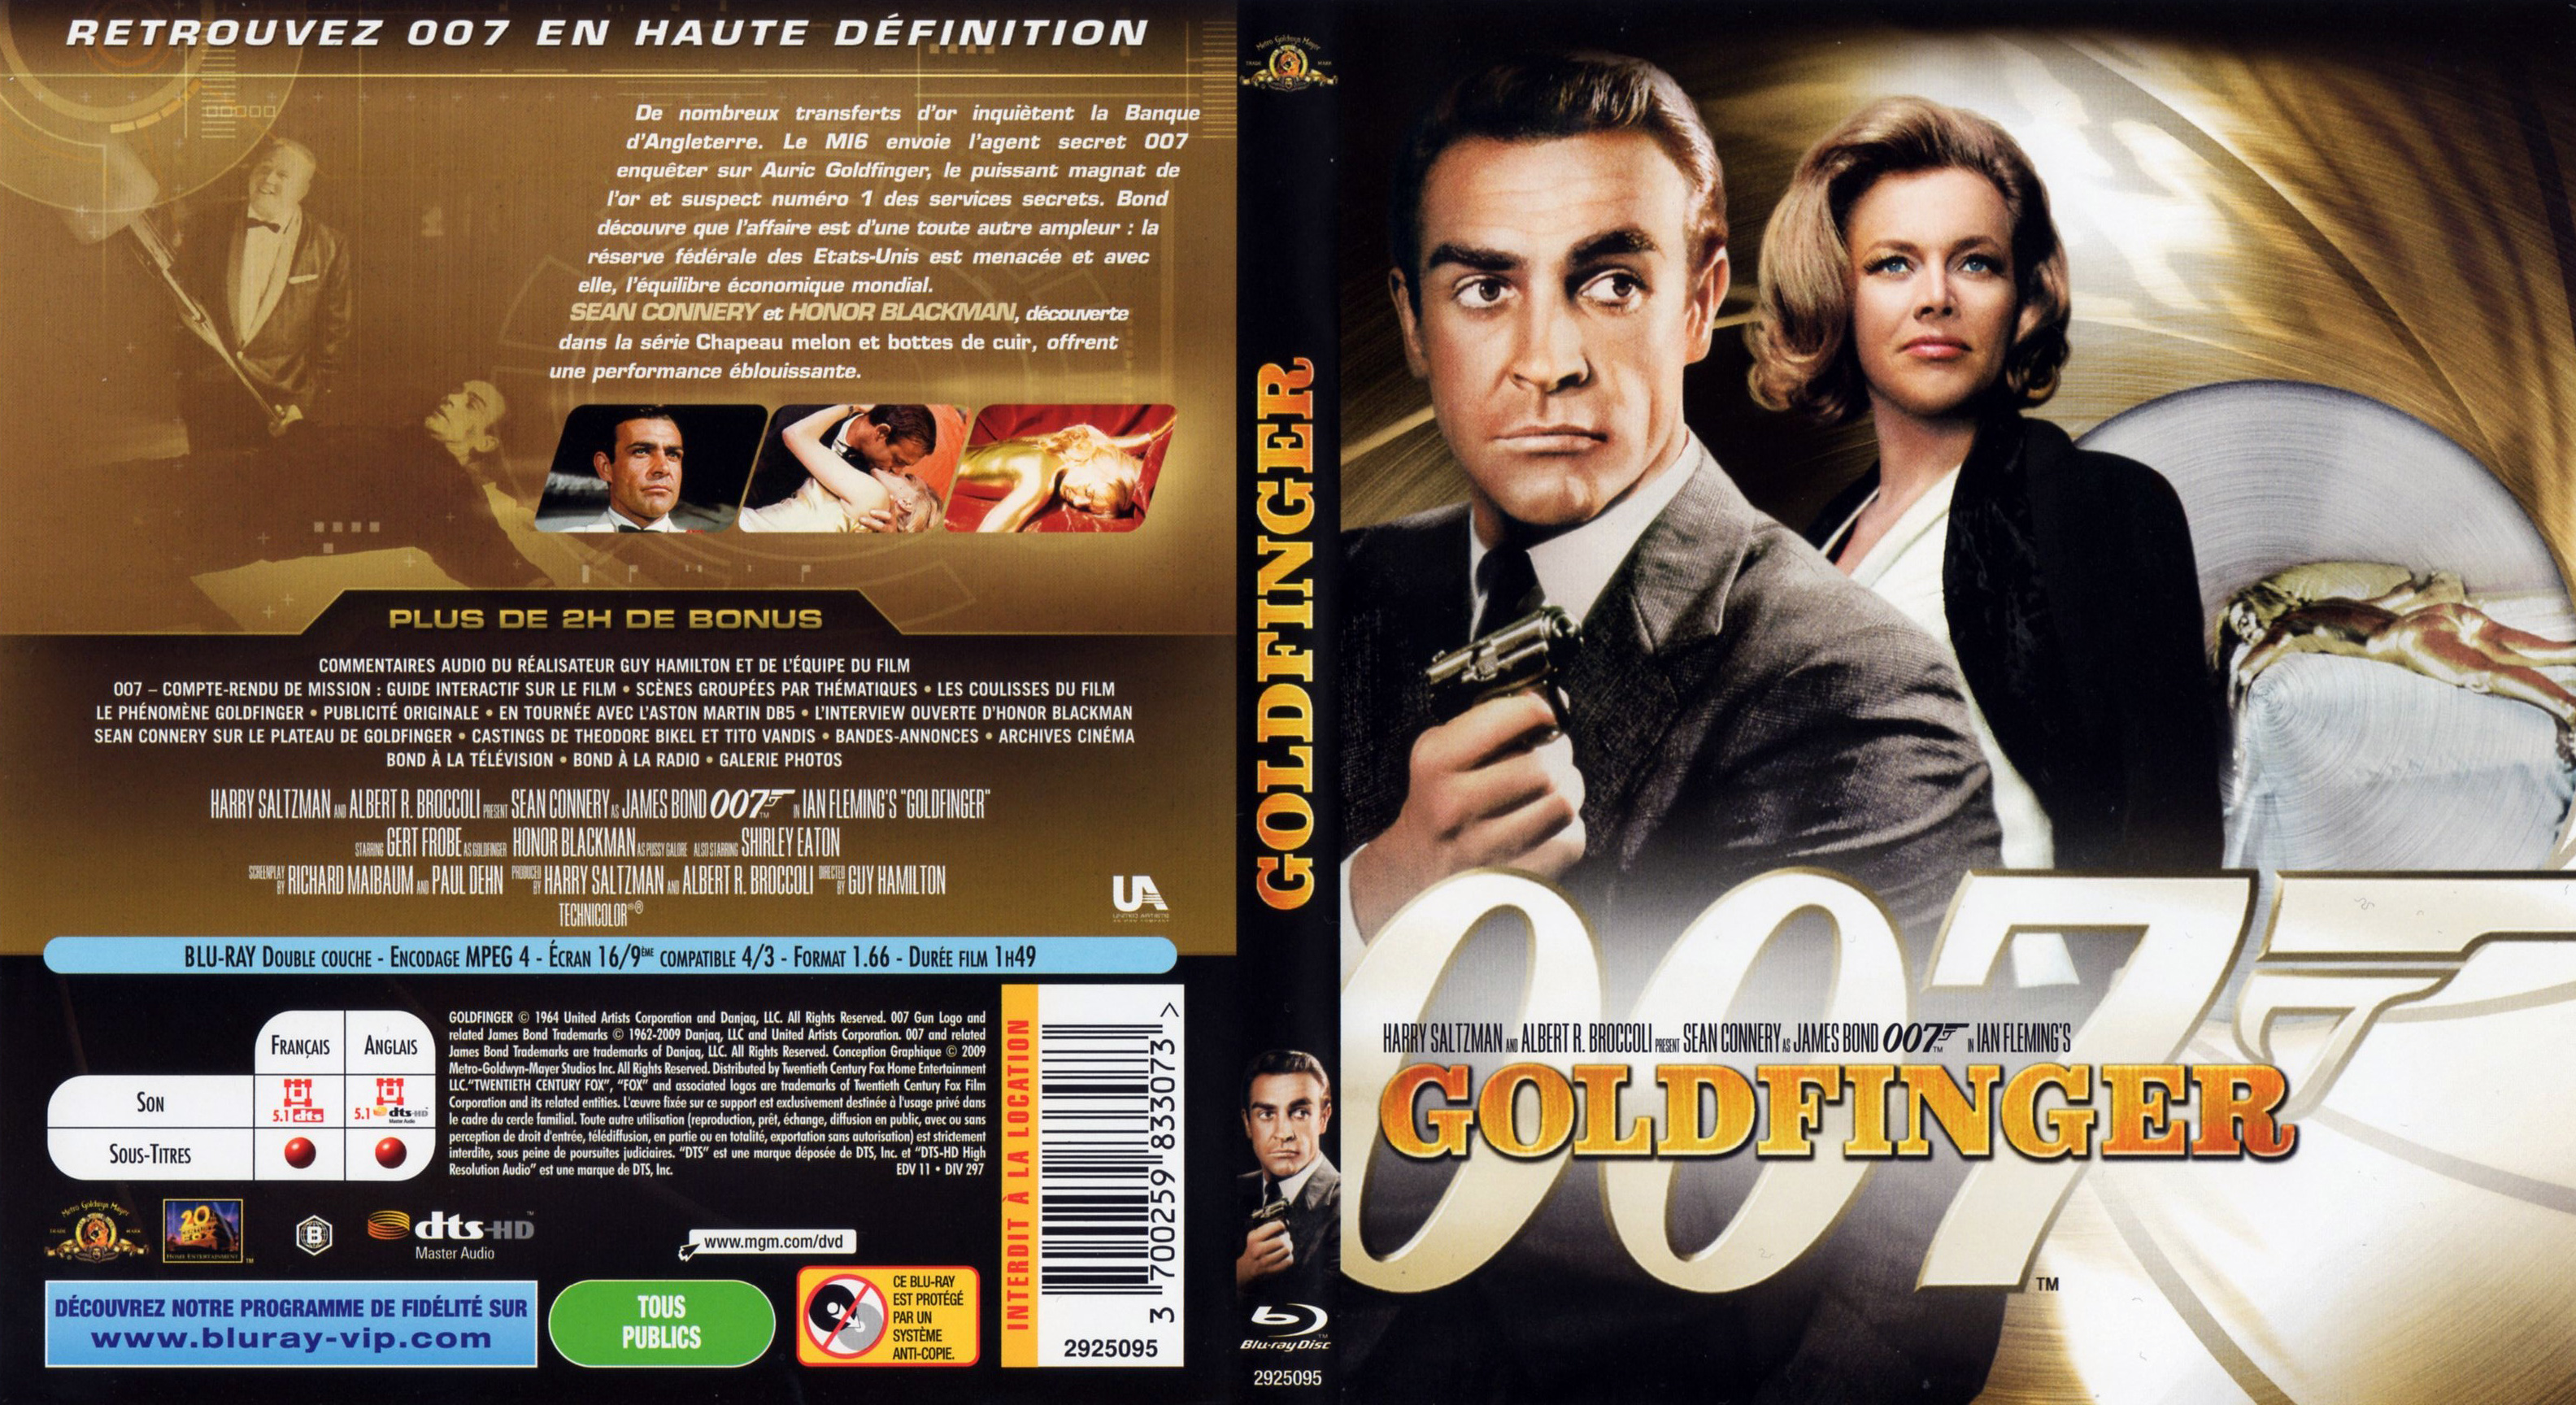 Jaquette DVD de James Bond 007 Goldfinger (BLU-RAY) - Cinéma Passion